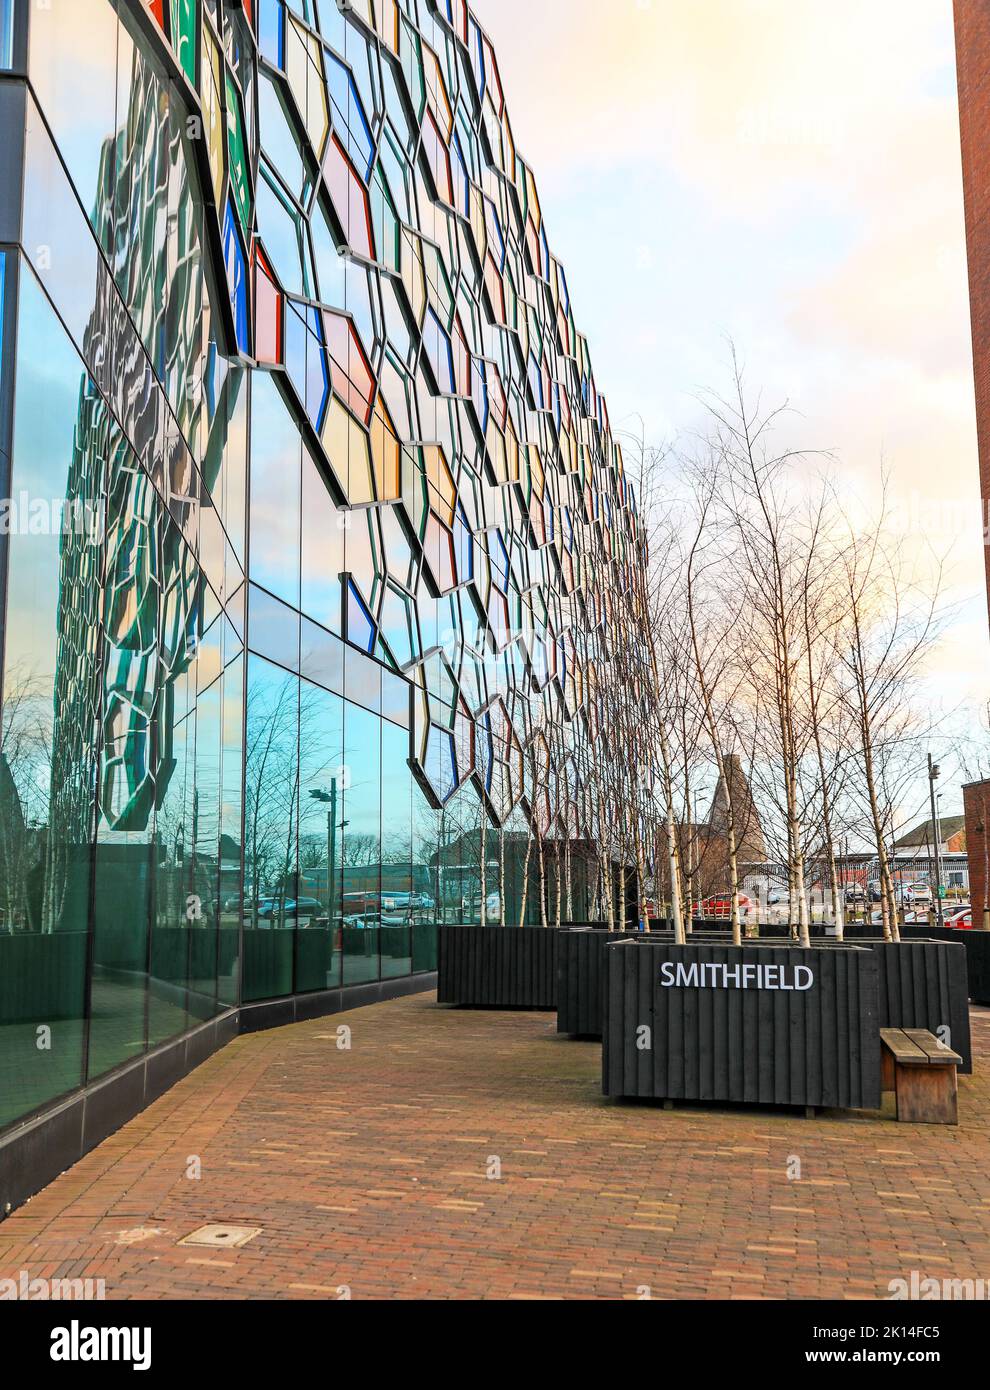 Uno Smithfield, edificio civico per uffici, progettato da RHWL Architects, Hanley, Stoke on Trent, Staffordshire, staff, Inghilterra, Regno Unito Foto Stock